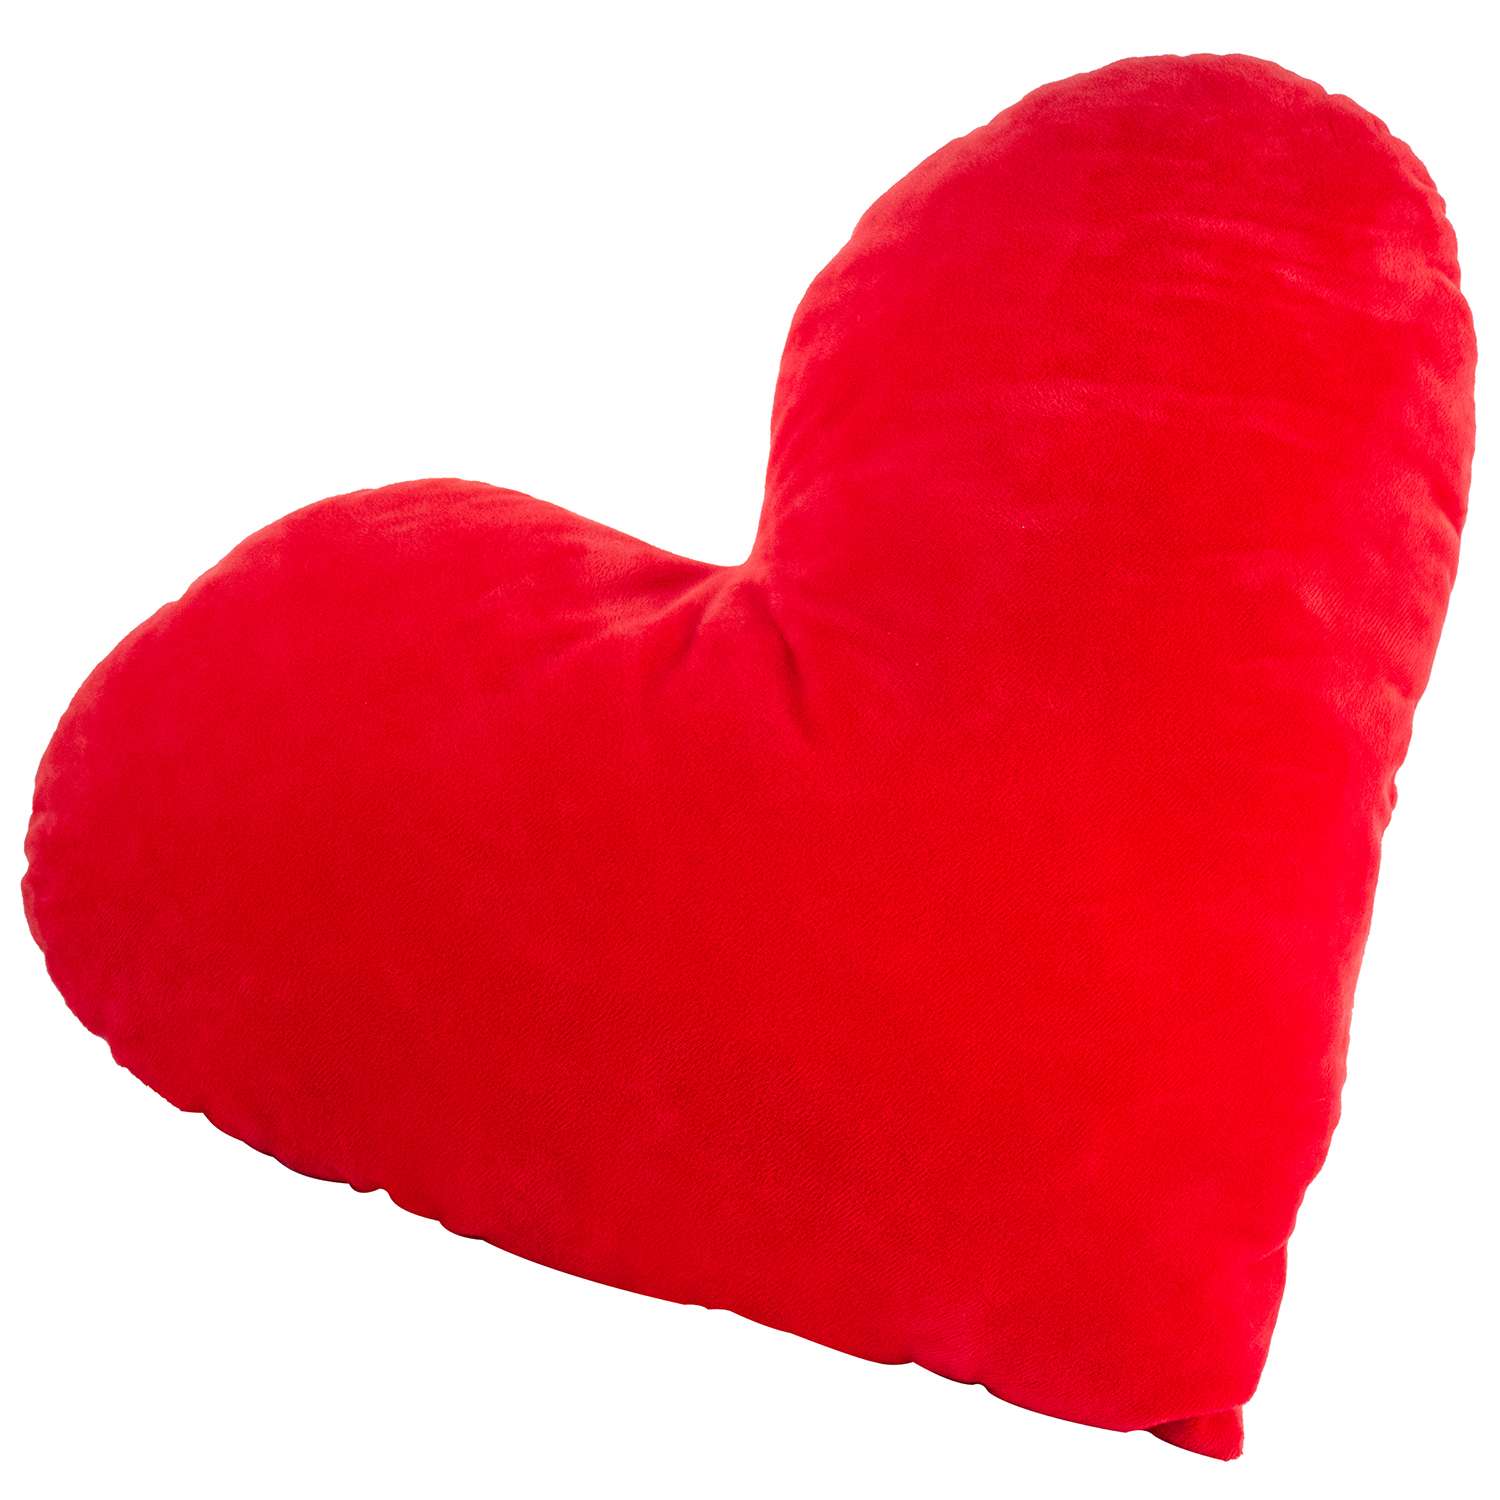 Игрушка мягконабивная Tallula Сердце 30 см красное - фото 1